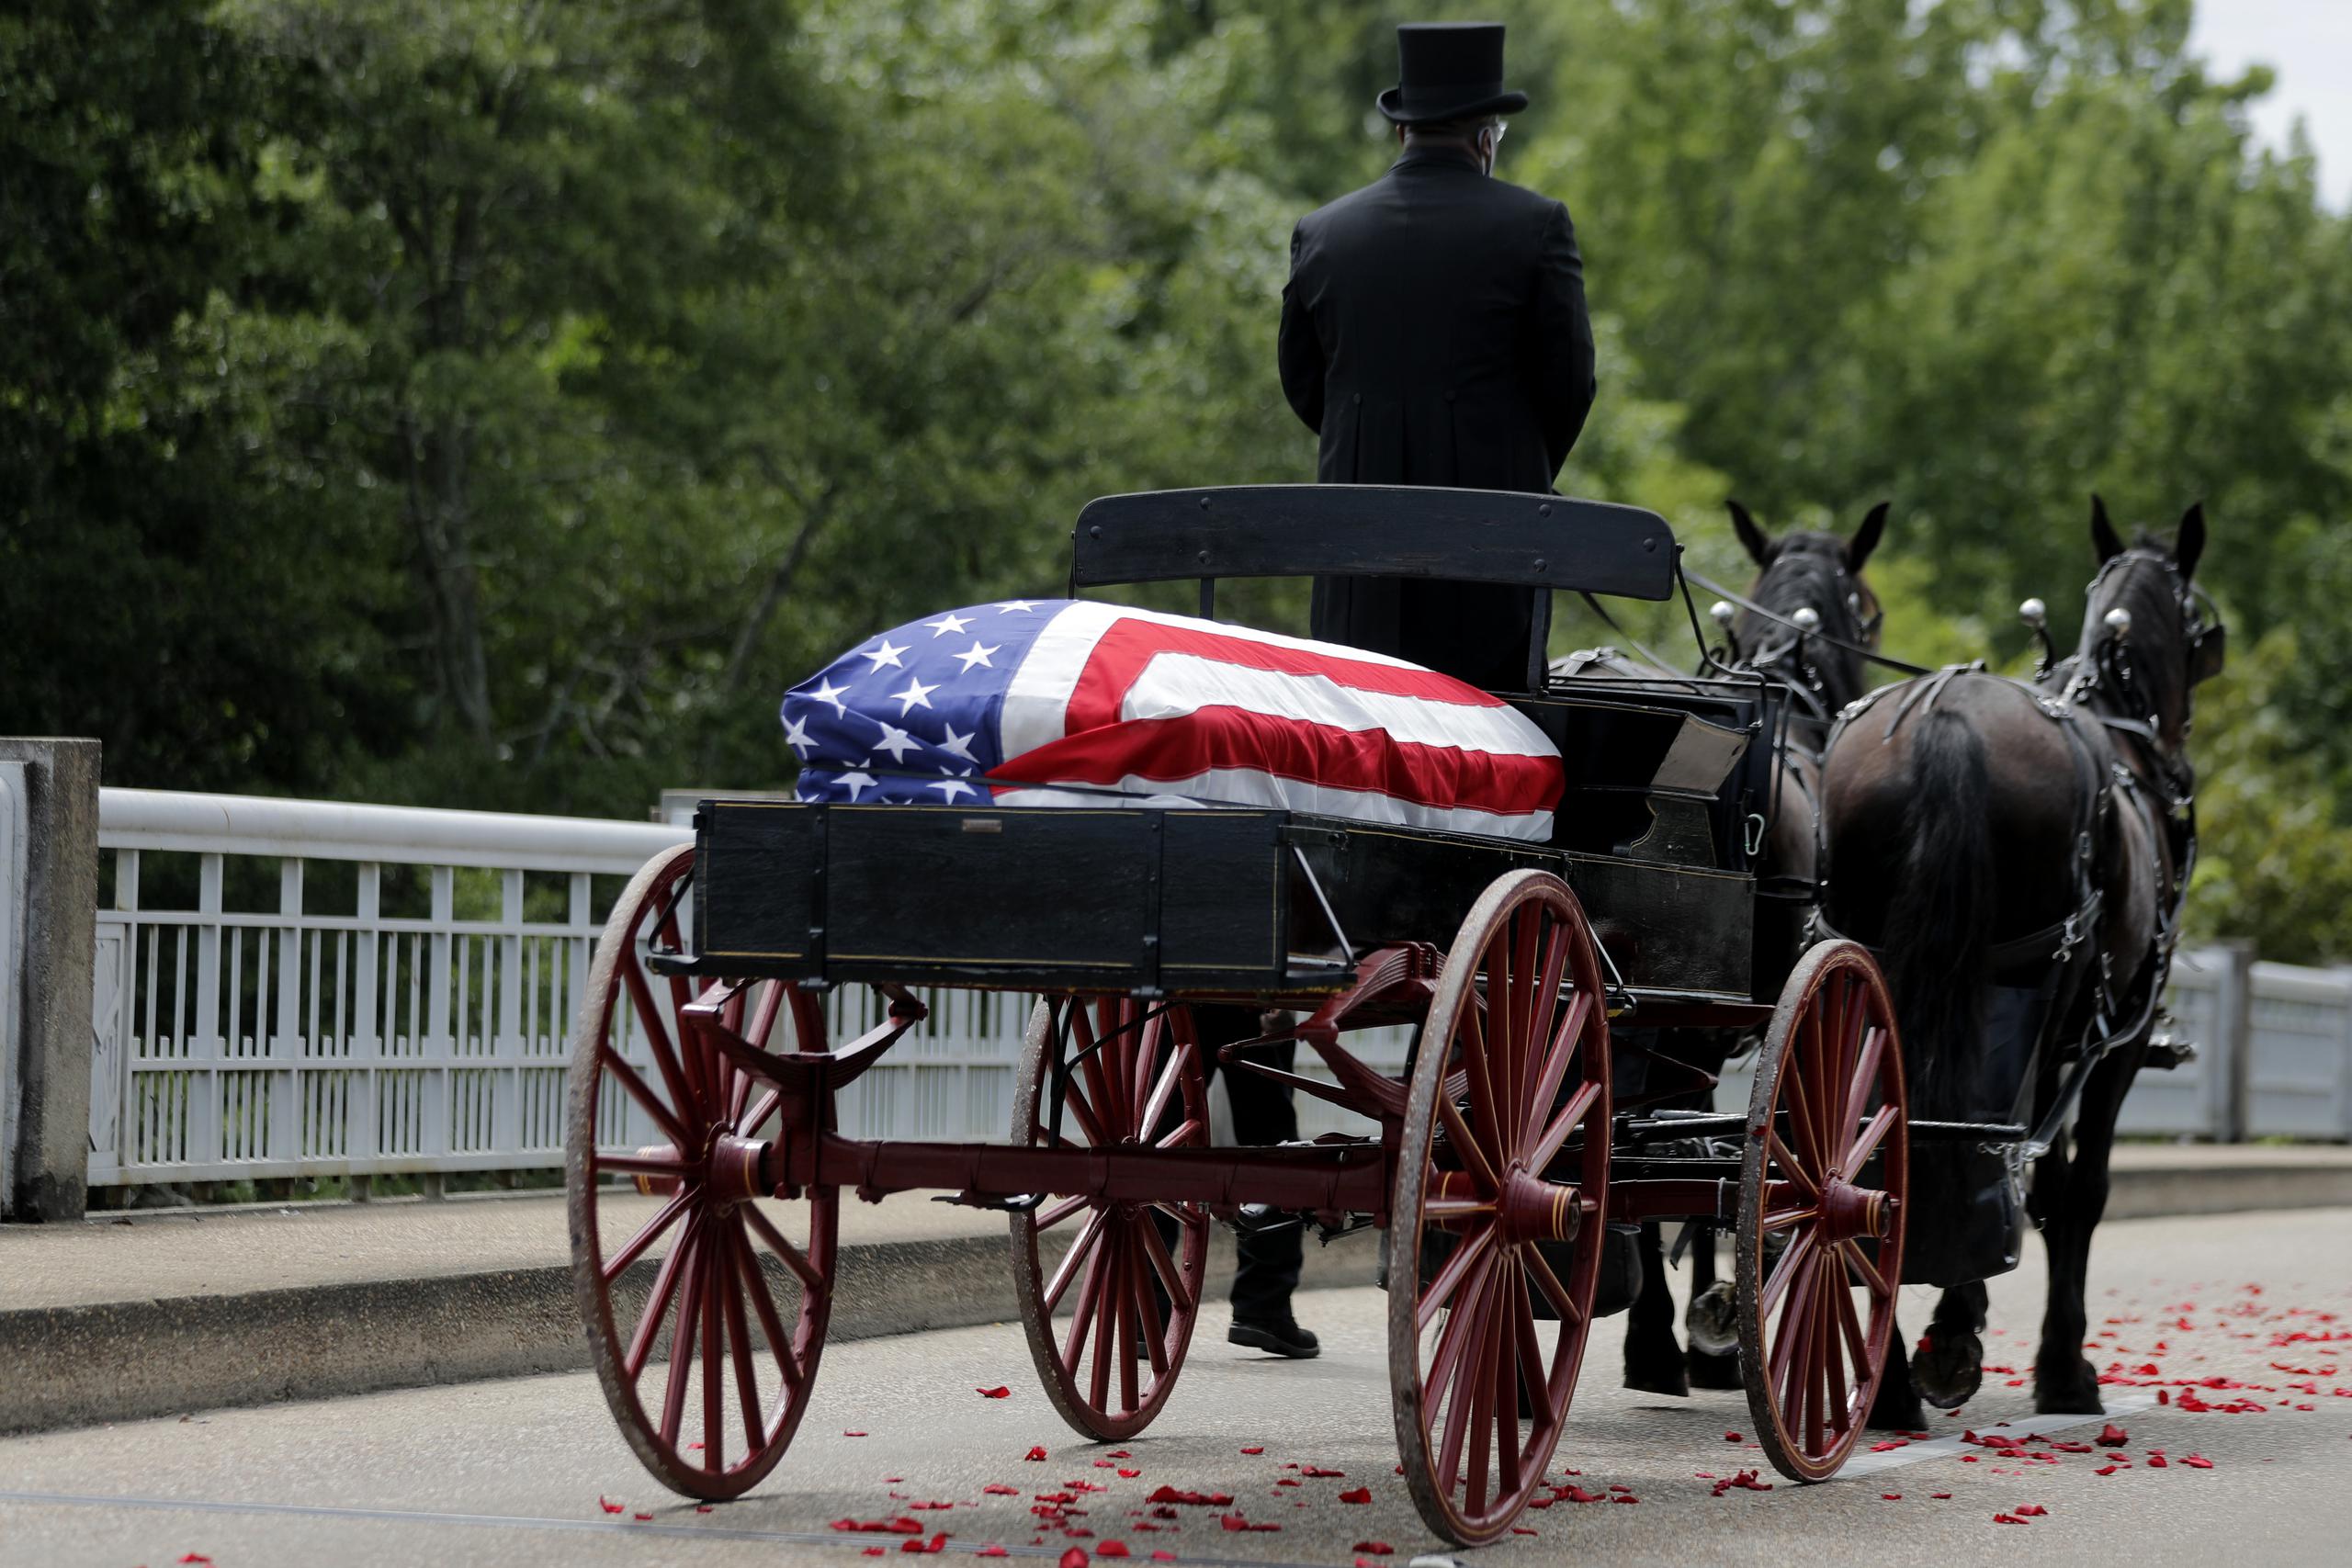 Una carroza fúnebre tirada por caballos recorrió la ruta desde Selma, y cruzó el puente donde el congresista John Lewis quedó ensangrentado en medio de una manifestación pacífica cuando era activista pro derechos civiles.